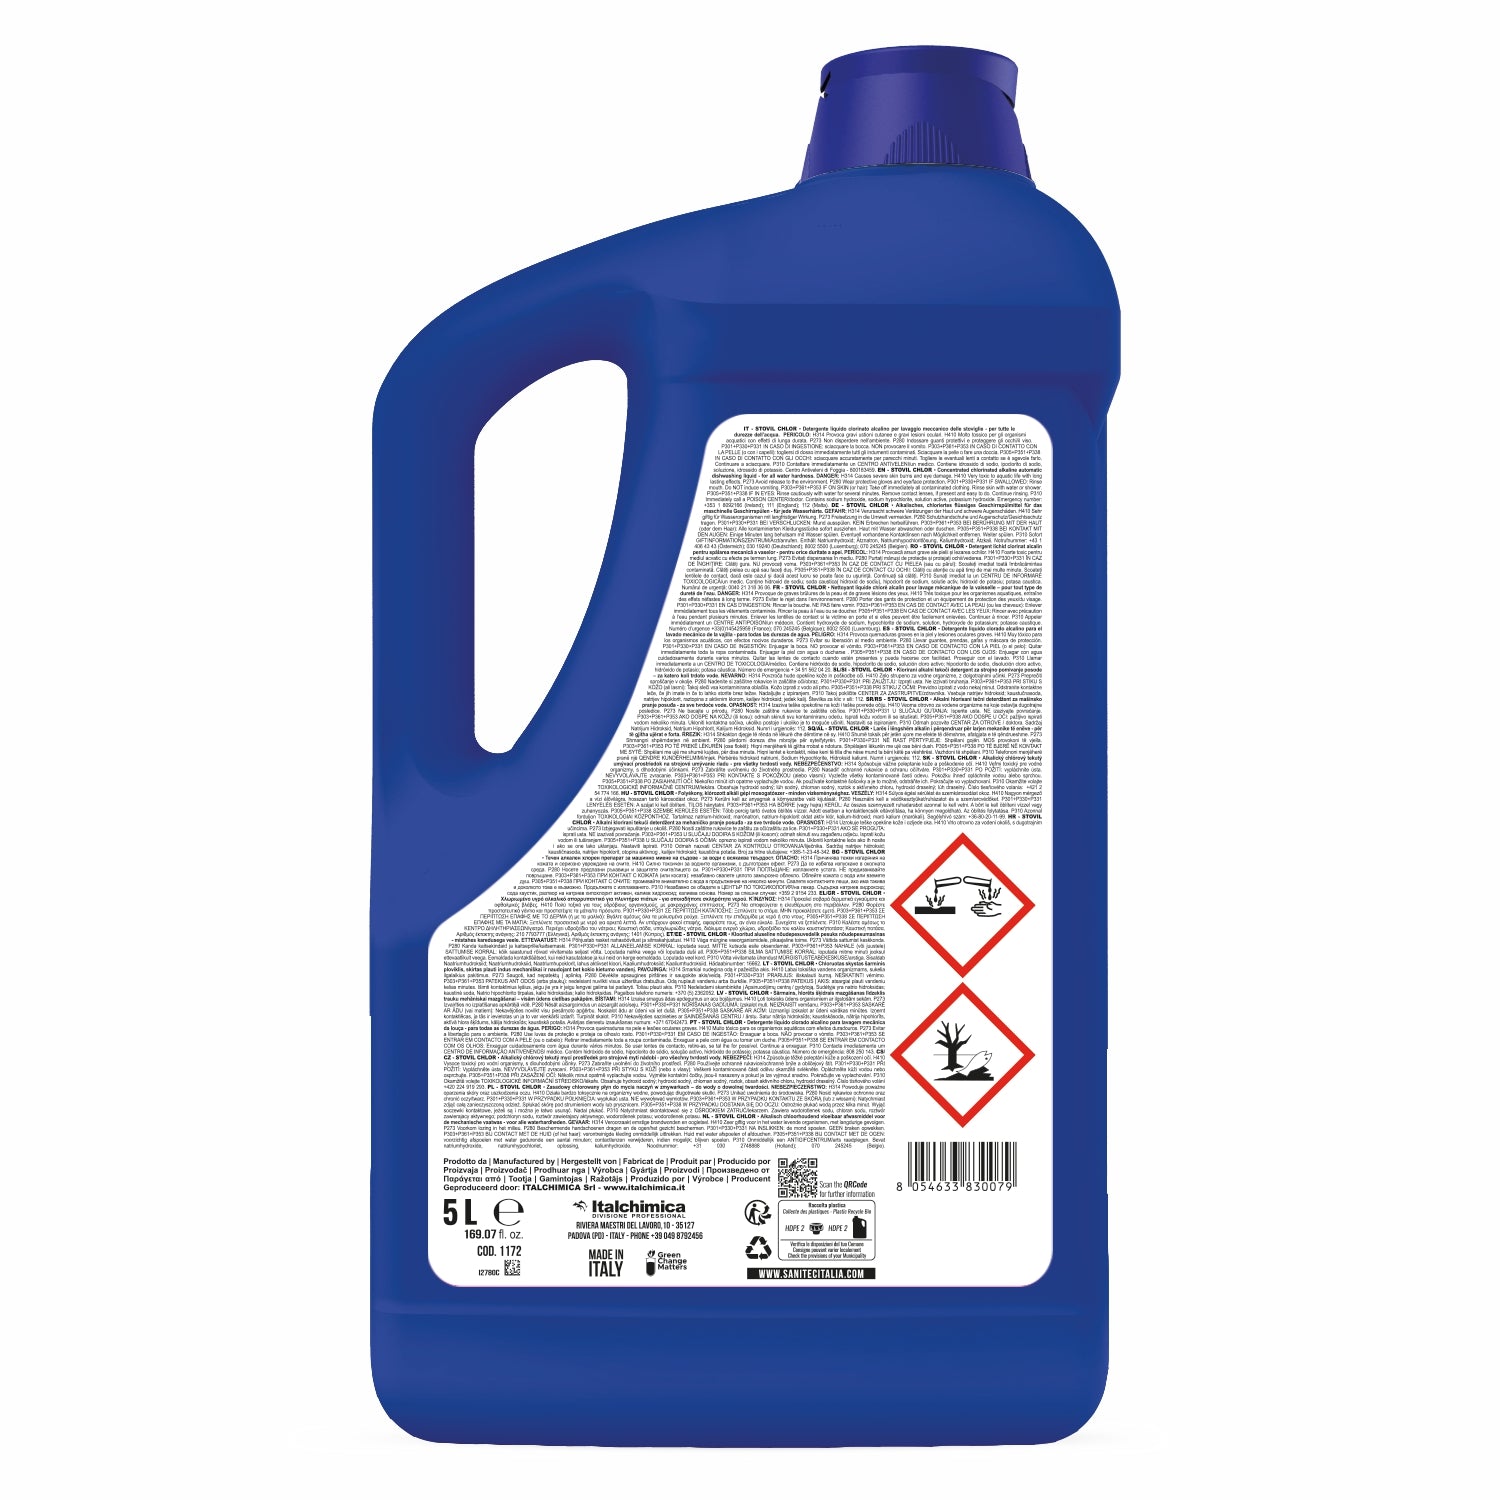 Lavastoviglie detergente Stovil Chlor 5 litri sanitec 1172